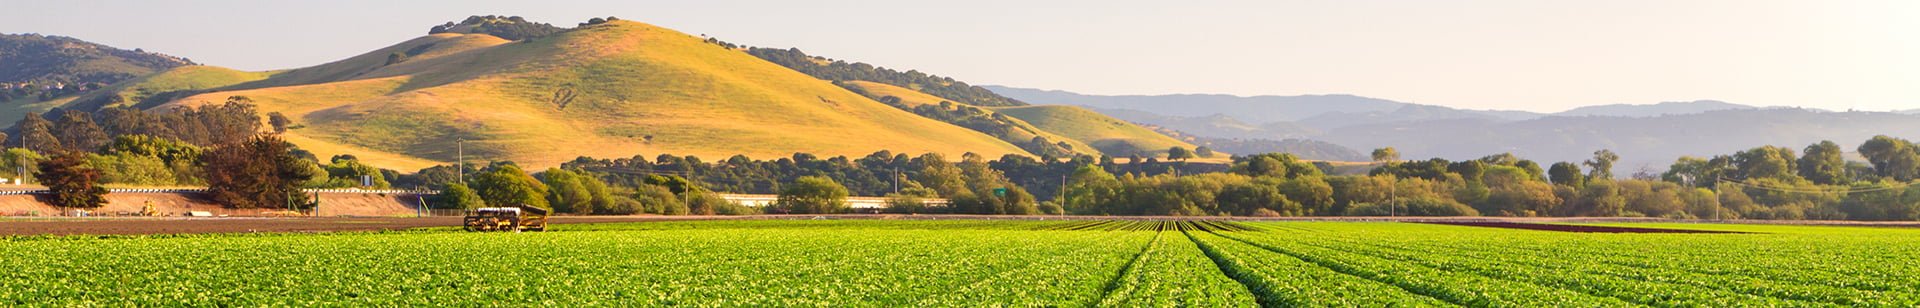 Salinas Valley lettuce field